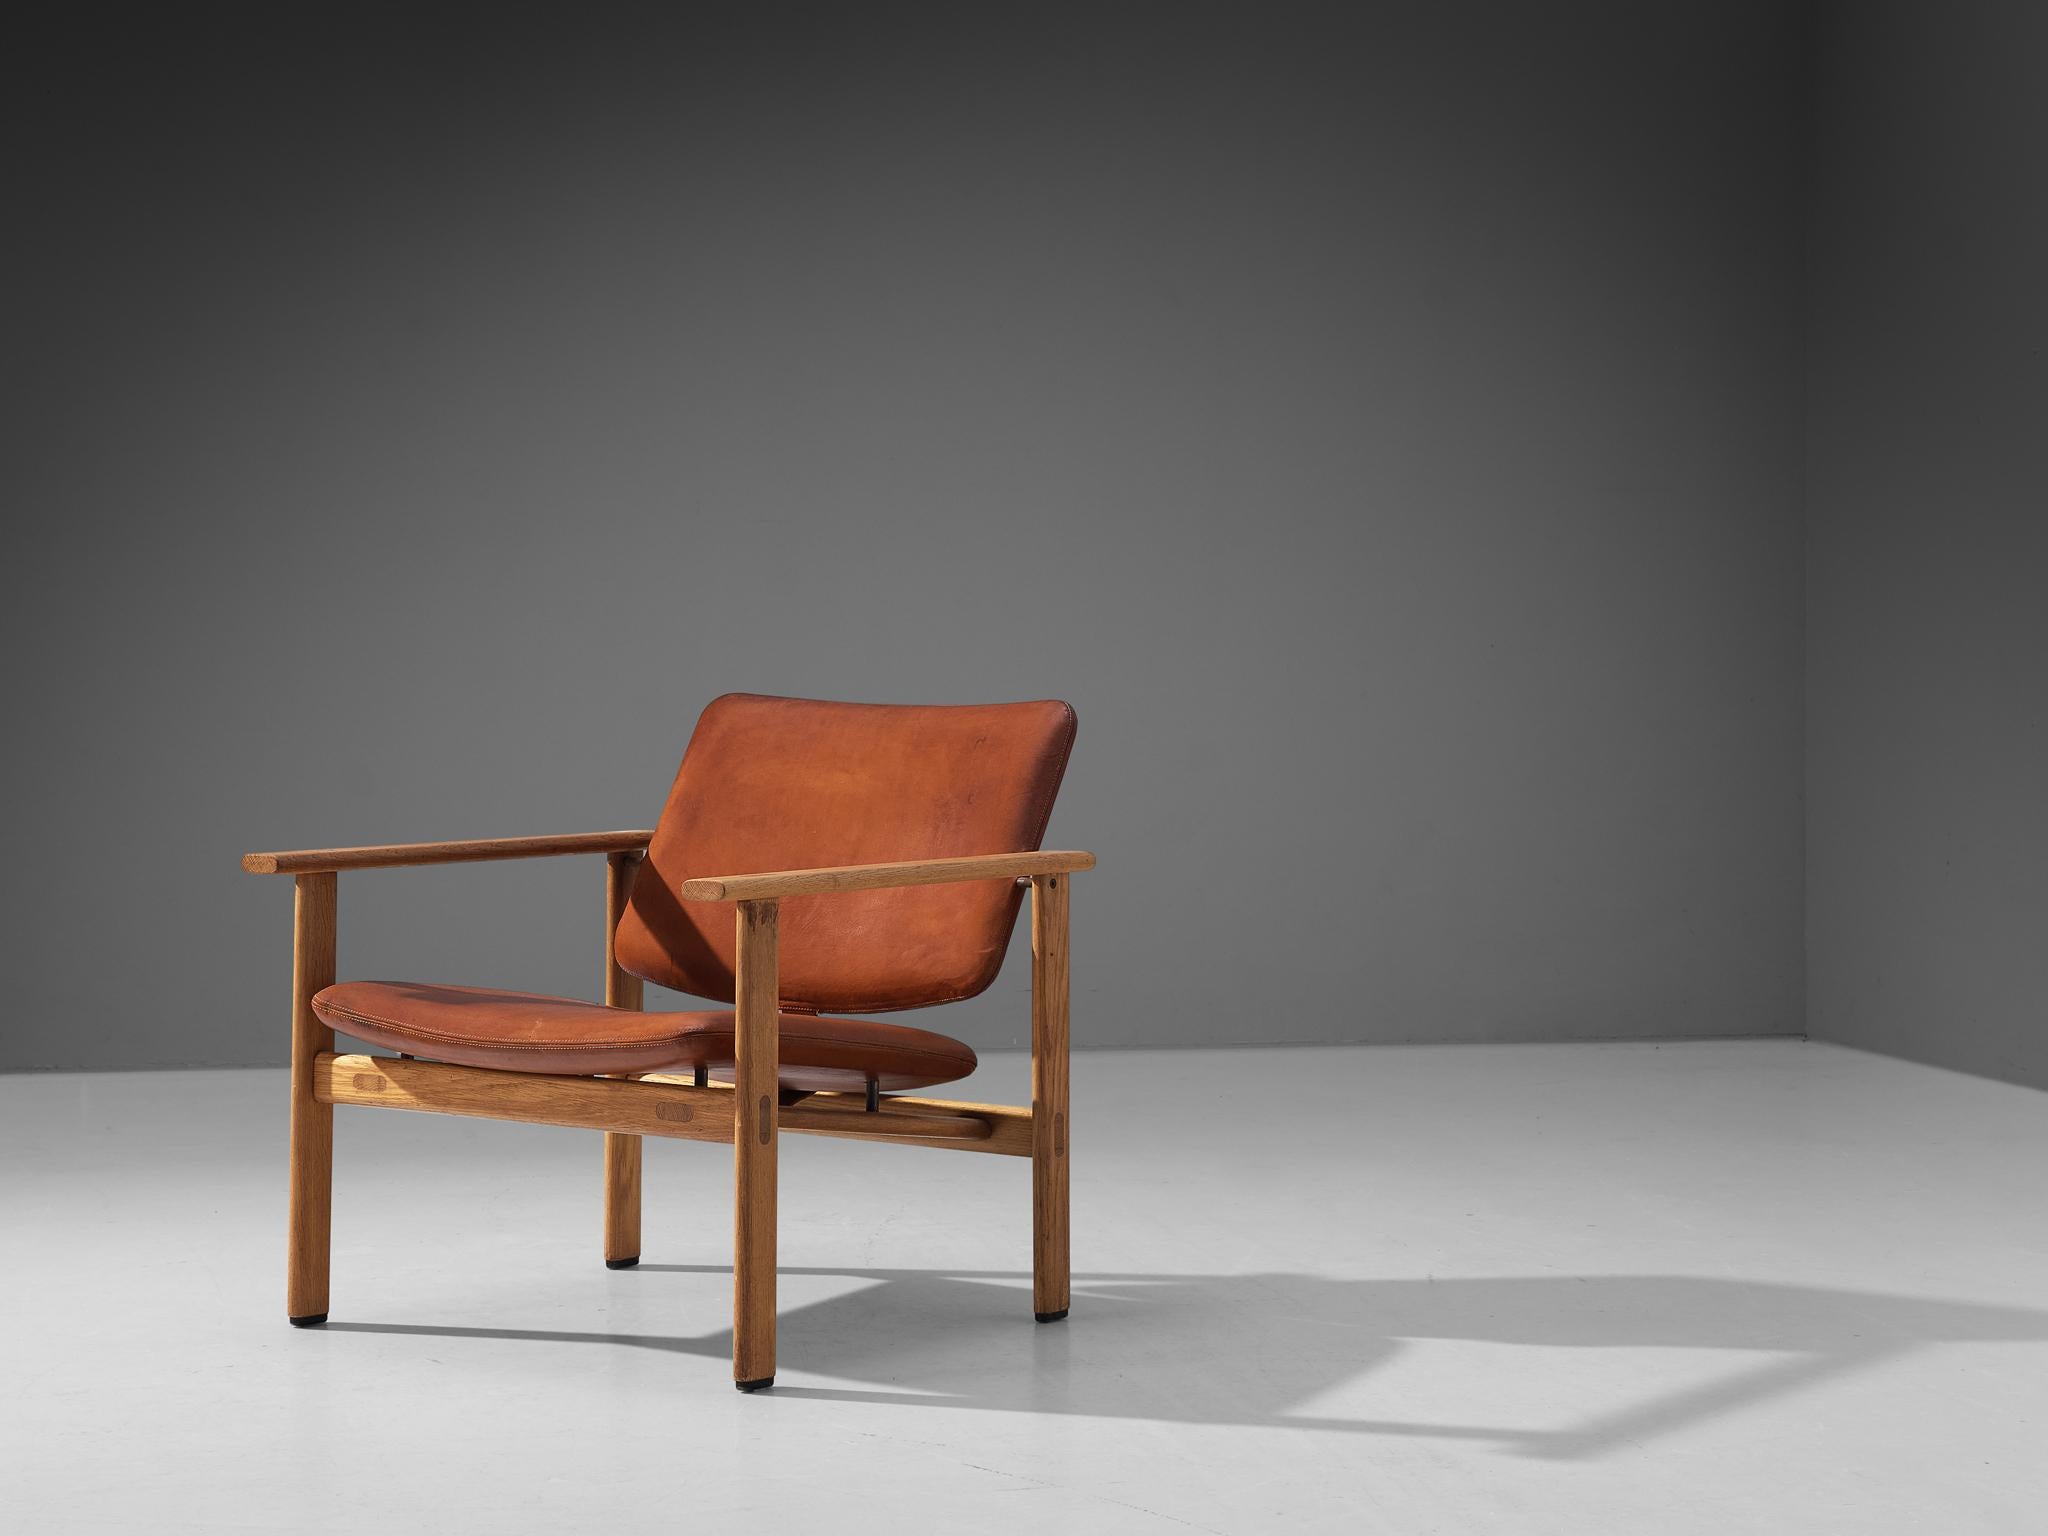 Arne Jacobsen pour Fritz Hansen, fauteuil, modèle '4700', chêne, cuir, Danemark, 1965.

Fauteuil conçu par le designer danois Arne Jacobsen (1902-1971). Le cadre présente des lignes géométriques élégantes et est exécuté en chêne massif. Les joints à